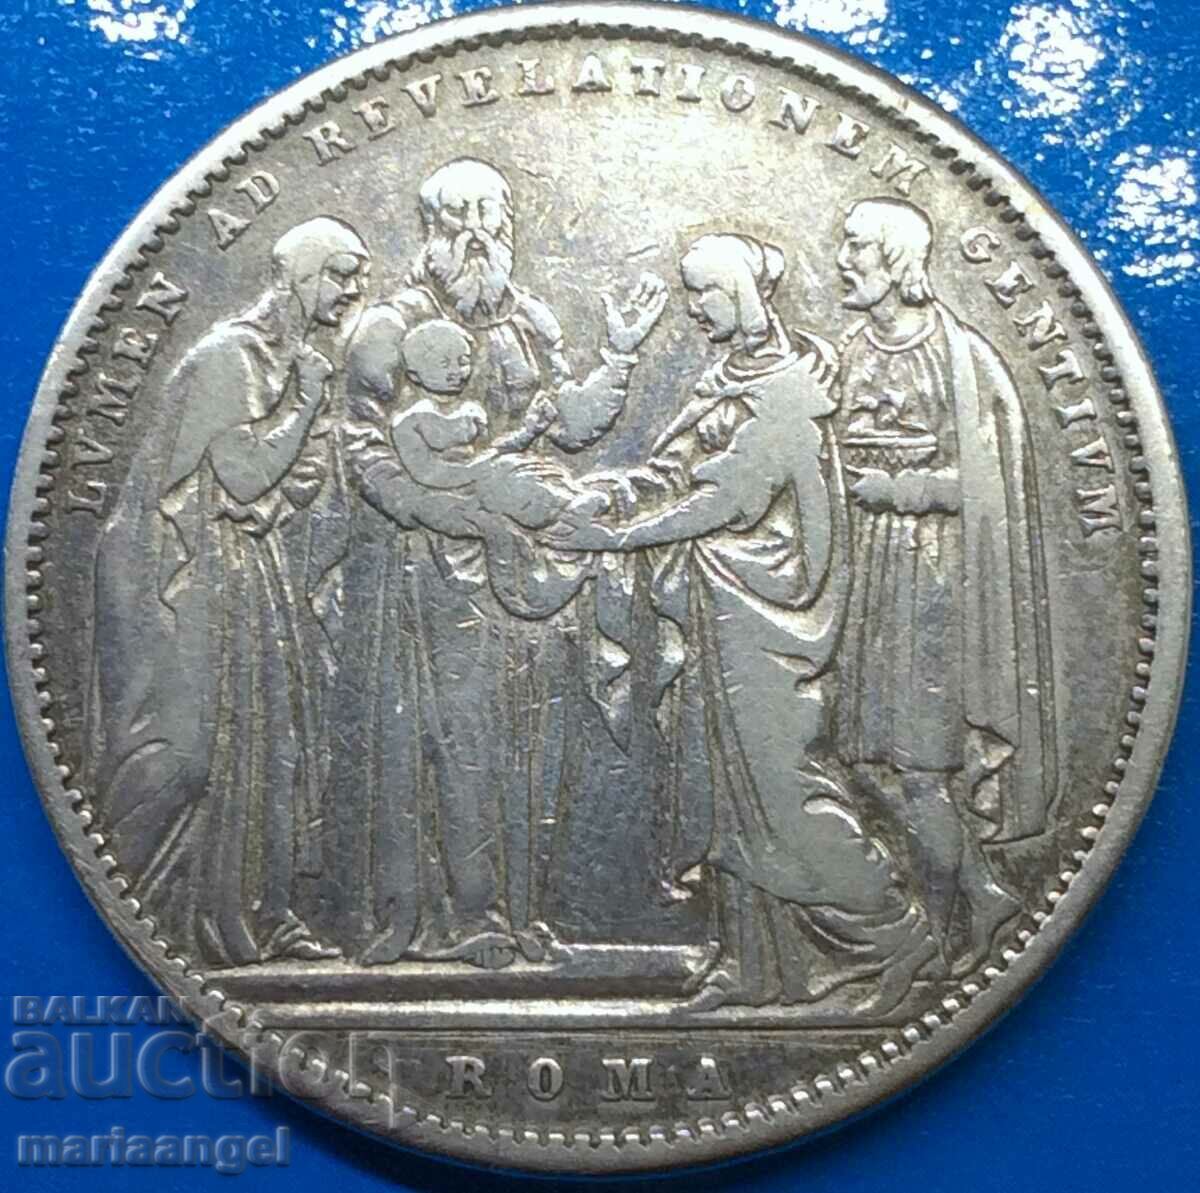 Shield 1834 Vatican Pontiff Gregory XVI silver